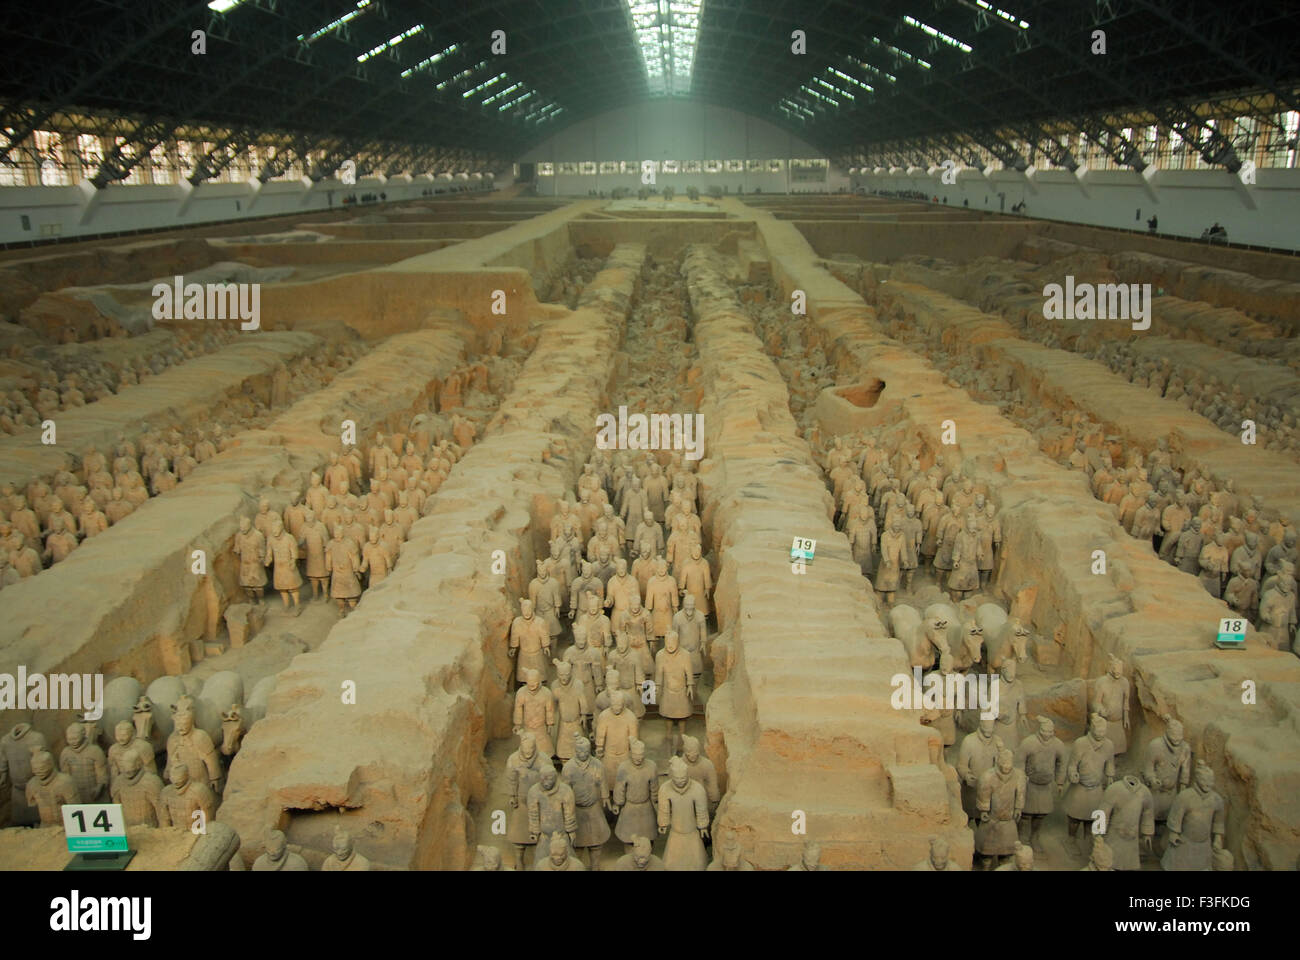 Des statues de guerriers en terre cuite dans la fosse 1 de l'armée de terre cuite ; ; ; ; dynastie des Qin Xian Chine Banque D'Images